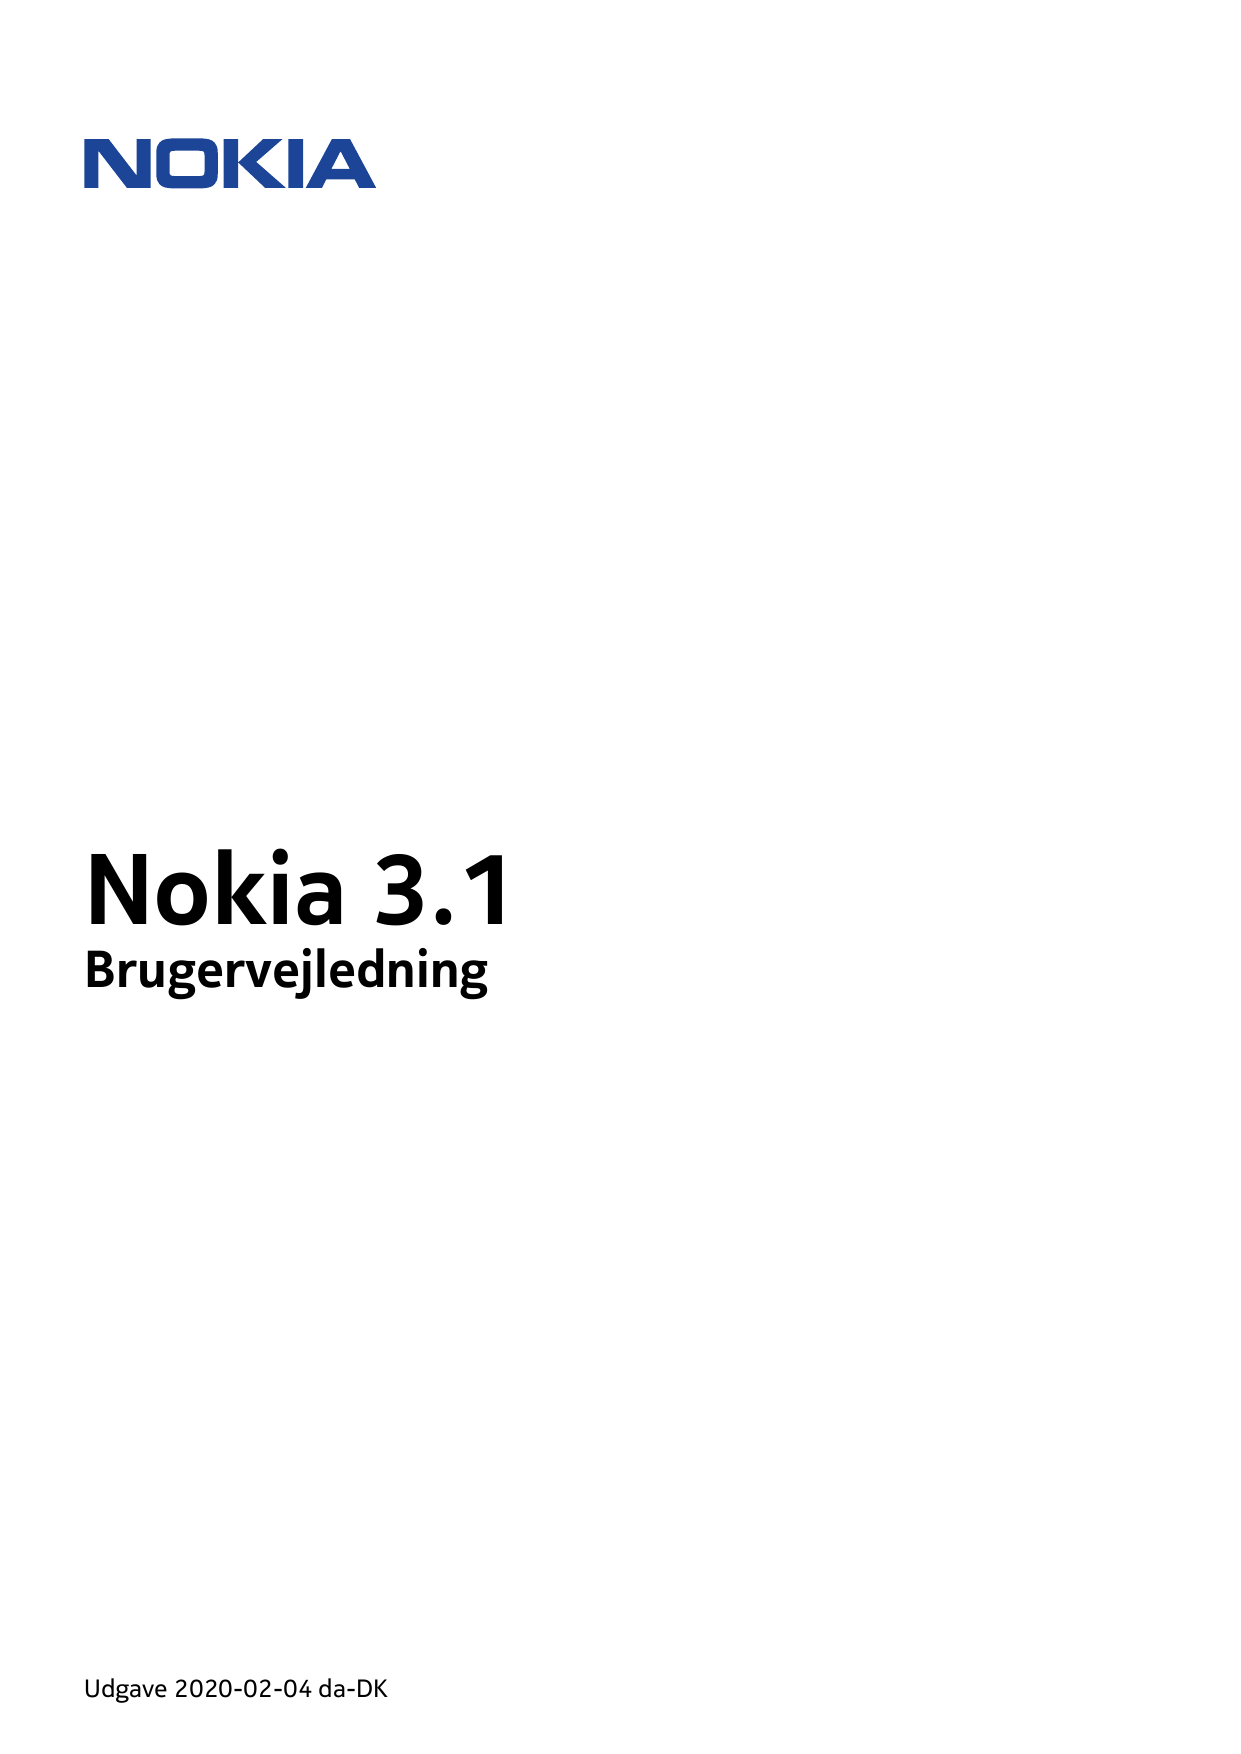 Nokia 3.1BrugervejledningUdgave 2020-02-04 da-DK